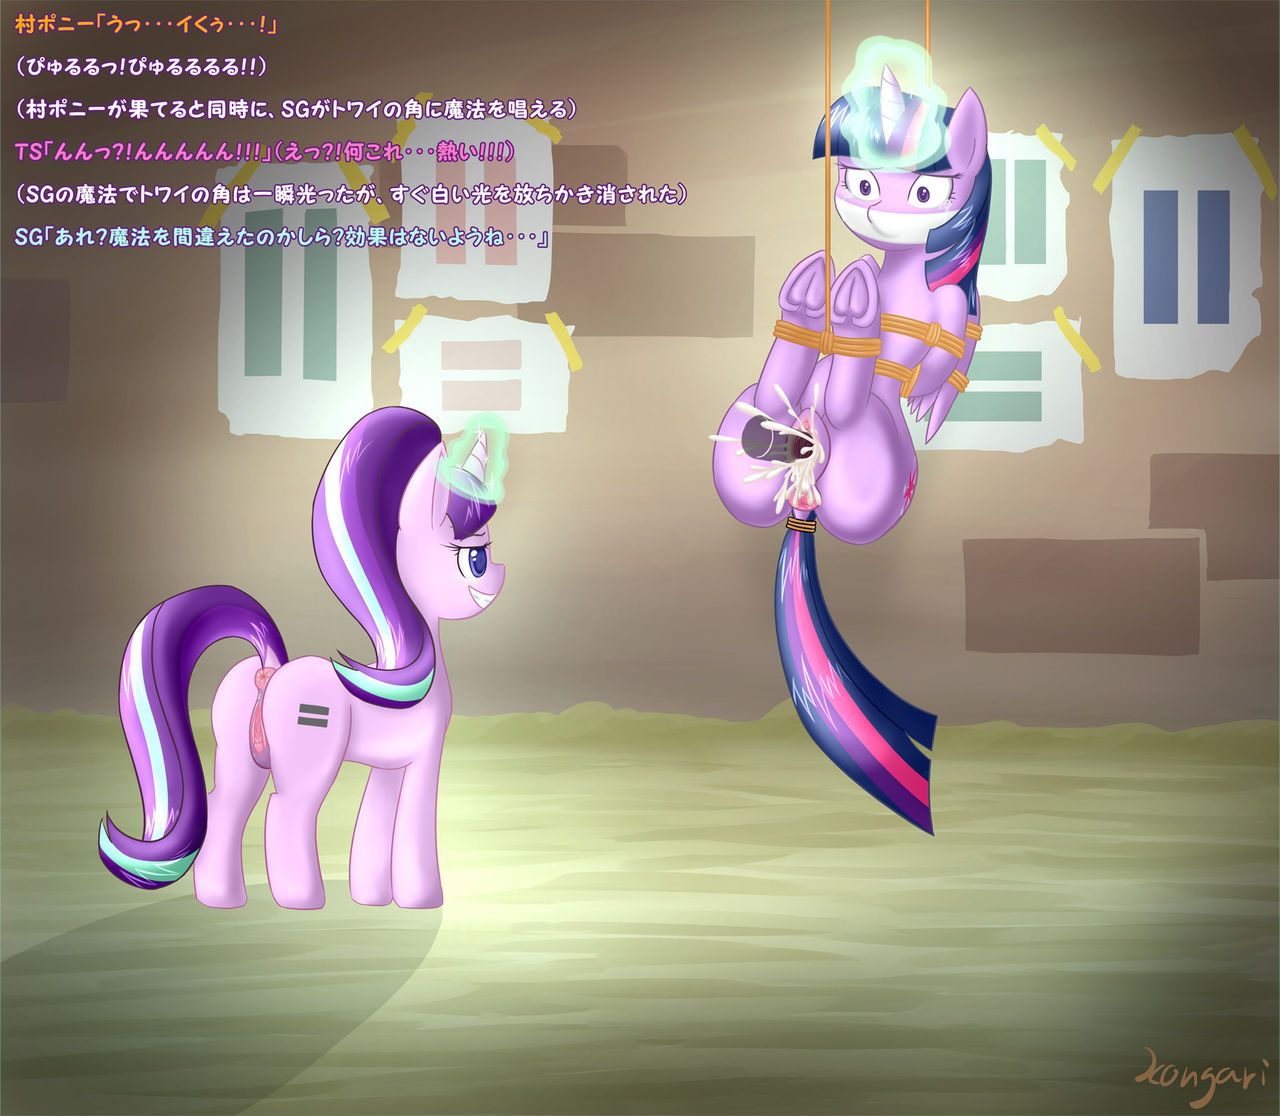 [こんがりトースト] S5E01 BAD END (parts 1-2) (My Little Pony: Friendship is Magic) 6